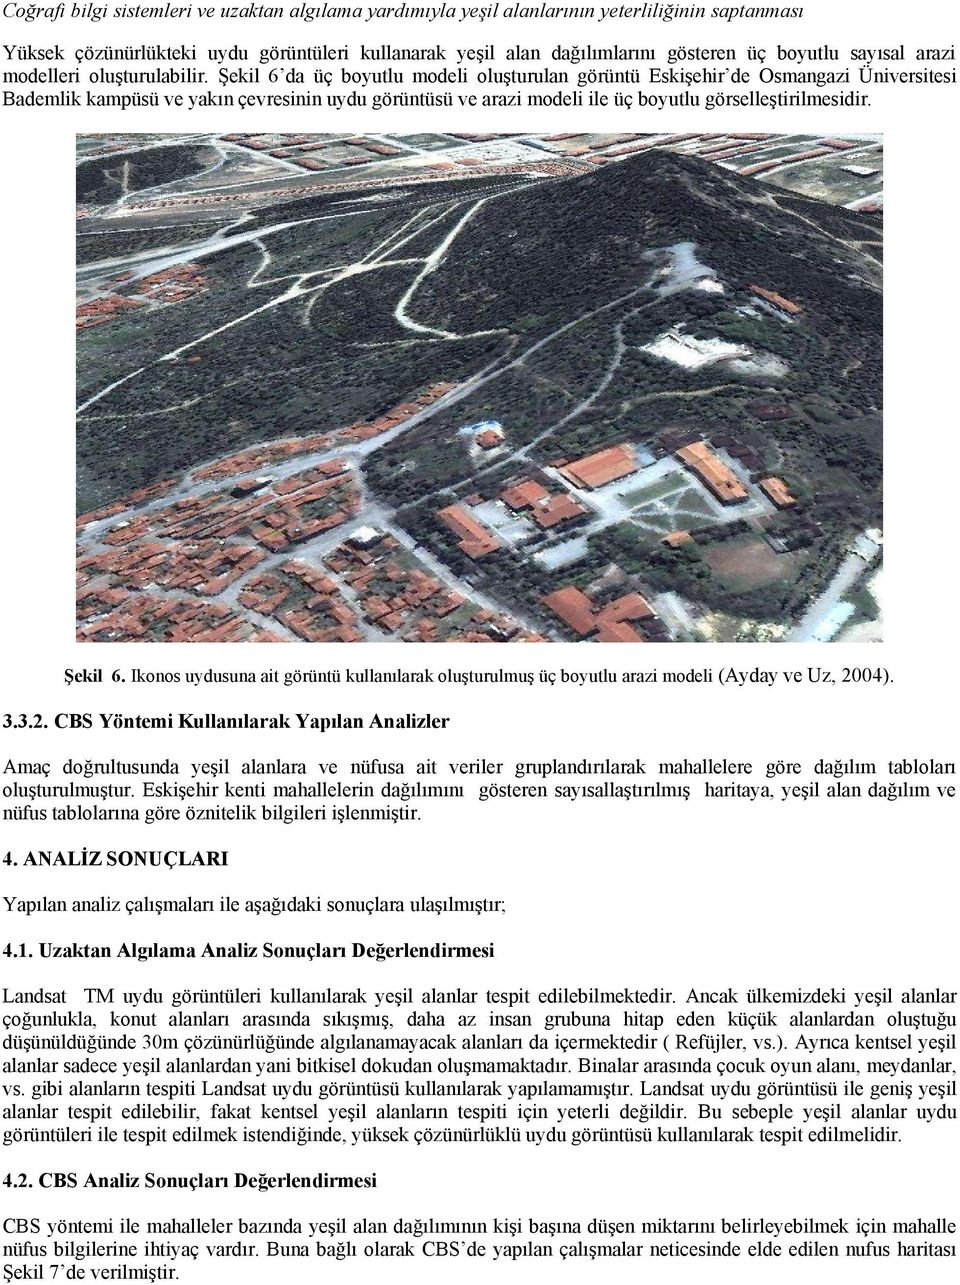 Şekil 6 da üç boyutlu modeli oluşturulan görüntü Eskişehir de Osmangazi Üniversitesi Bademlik kampüsü ve yakın çevresinin uydu görüntüsü ve arazi modeli ile üç boyutlu görselleştirilmesidir. Şekil 6.